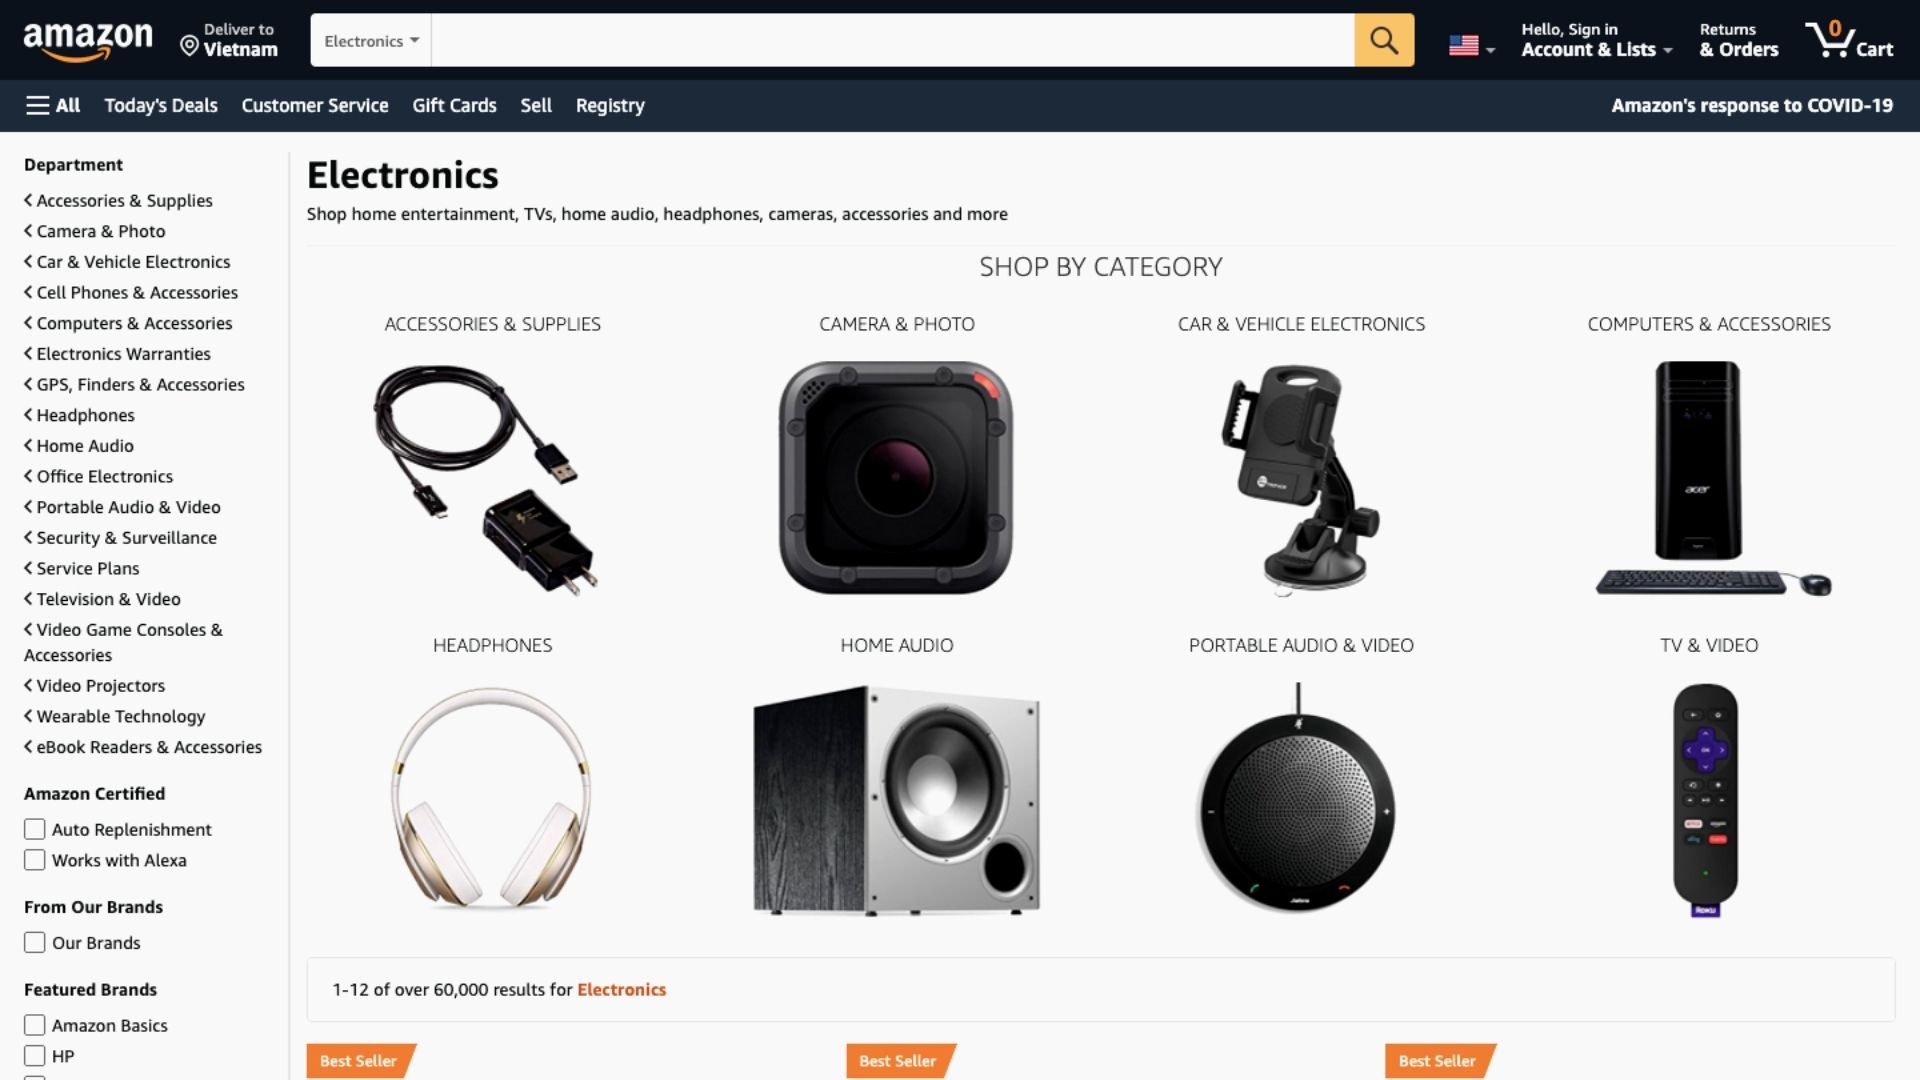 Amazon - Image Requirements